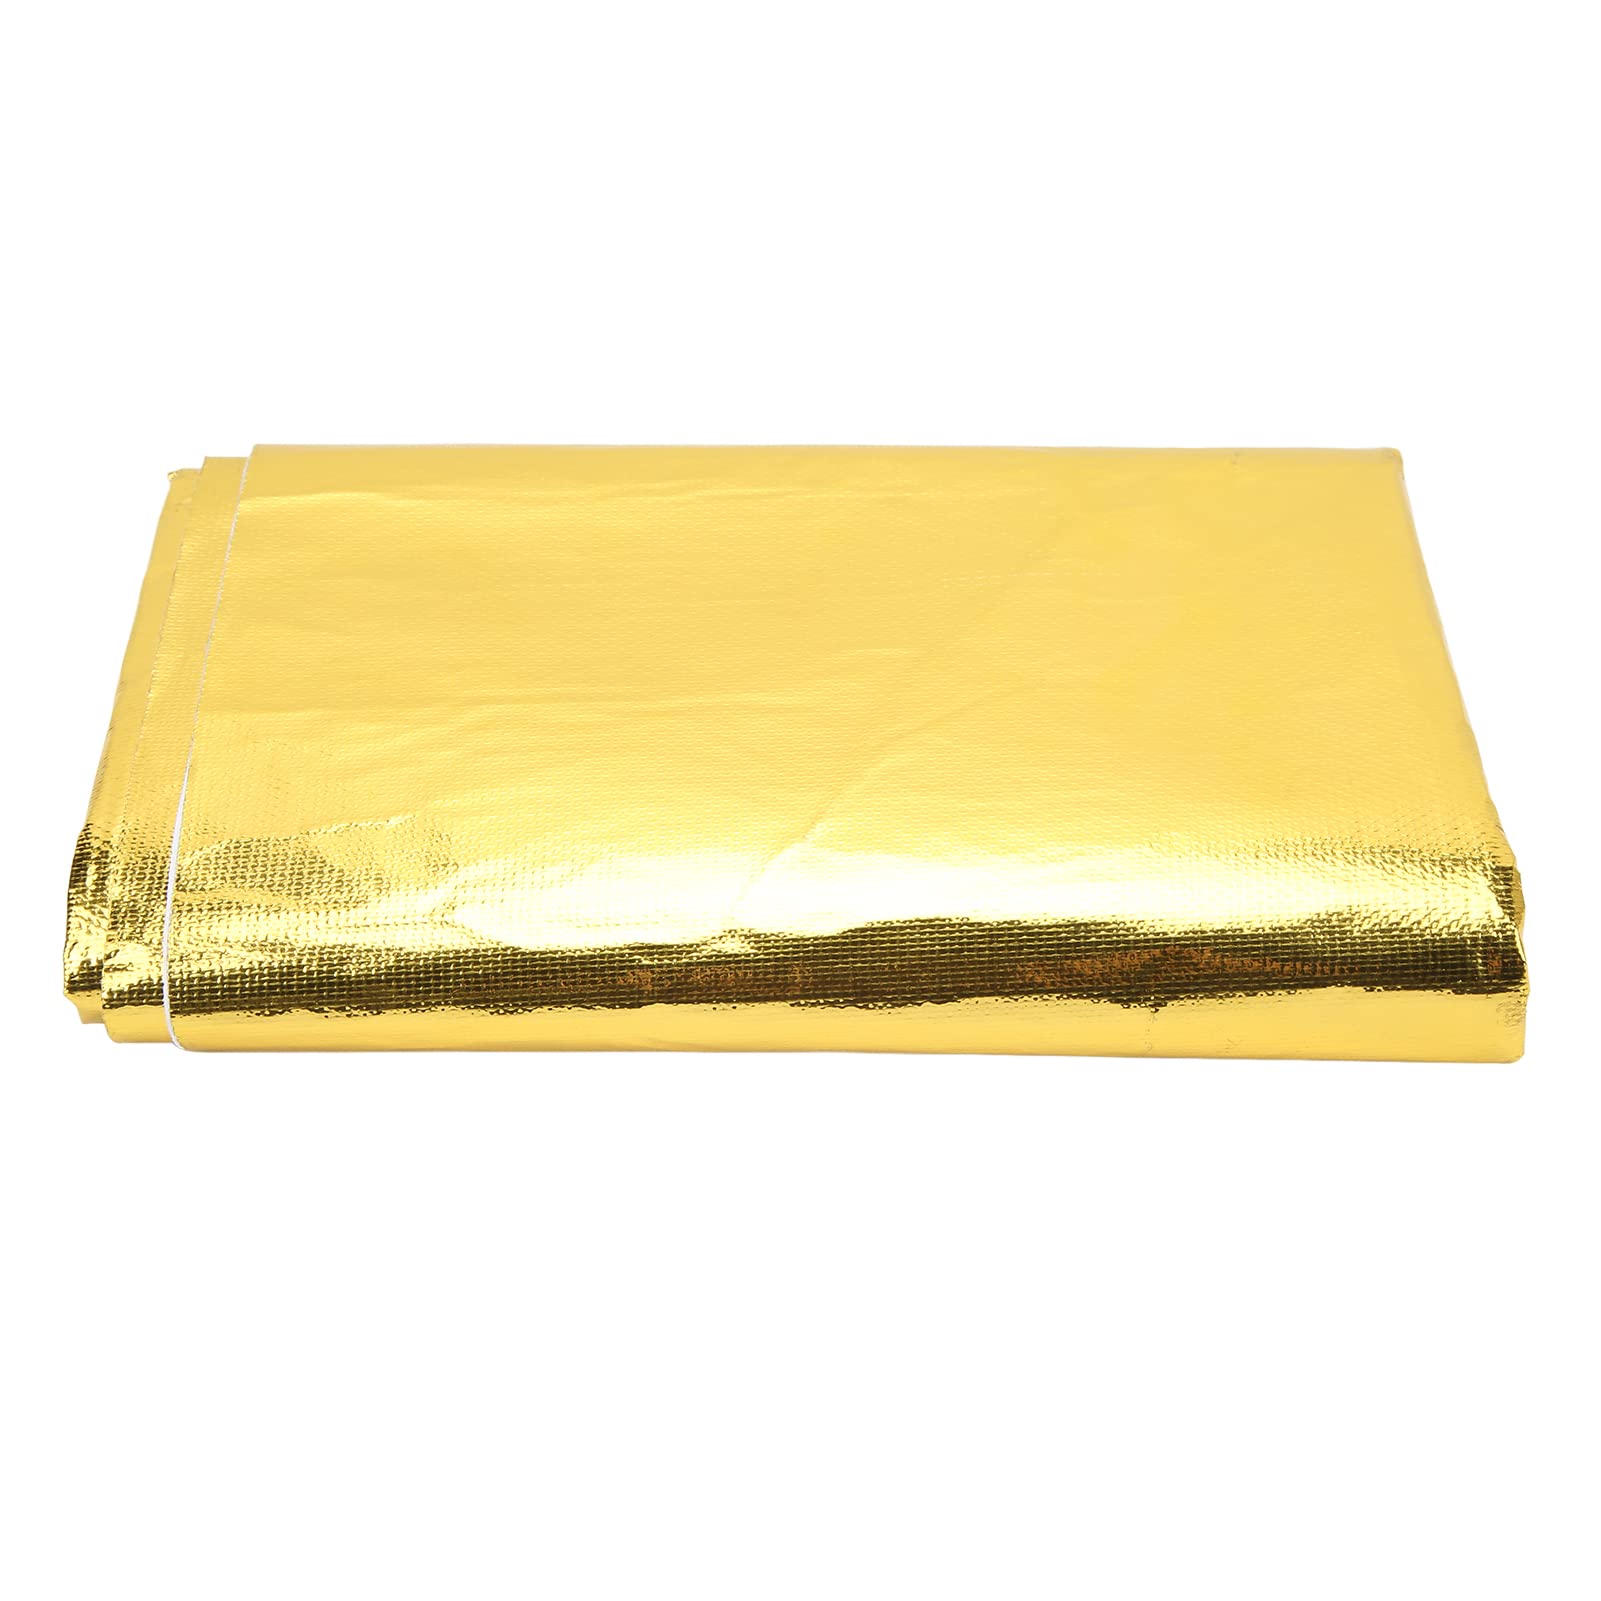 Wärmeisolierendes Reflektierendes Klebeband, Selbstklebende Reflektierende Gold-Hitzeschutzfolie für Hohe Temperaturen, Zum Umwickeln von Drähten und Kraftstoffleitungen (Gold) von Keenso